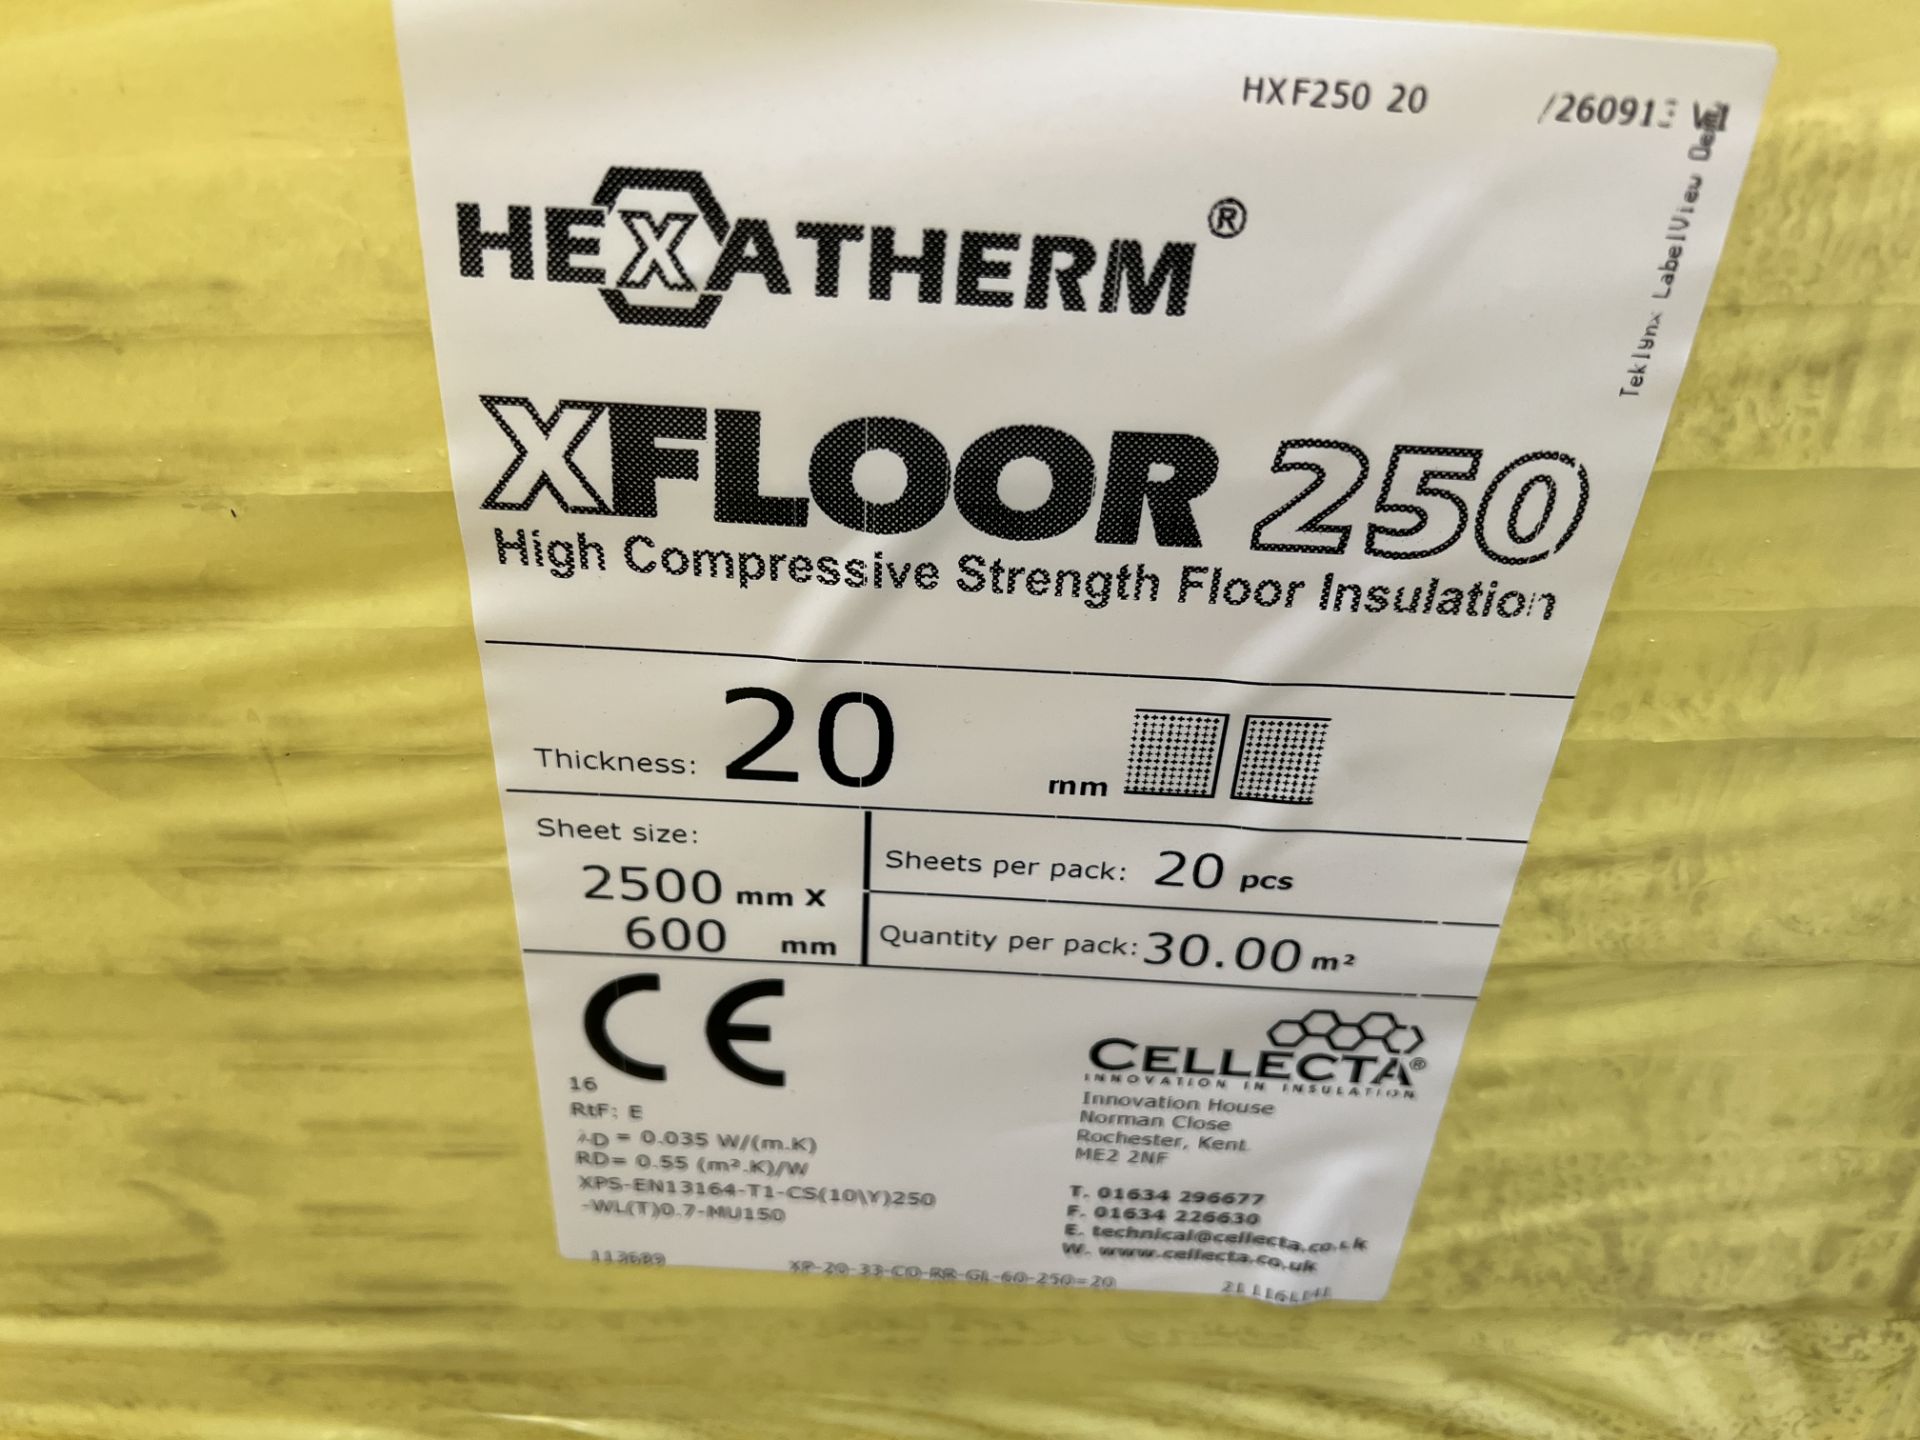 Hexatherm XFloor250 high compressive strength floor insulation, 2500mm x 600mm x 20mm, 9 packs - Image 2 of 3